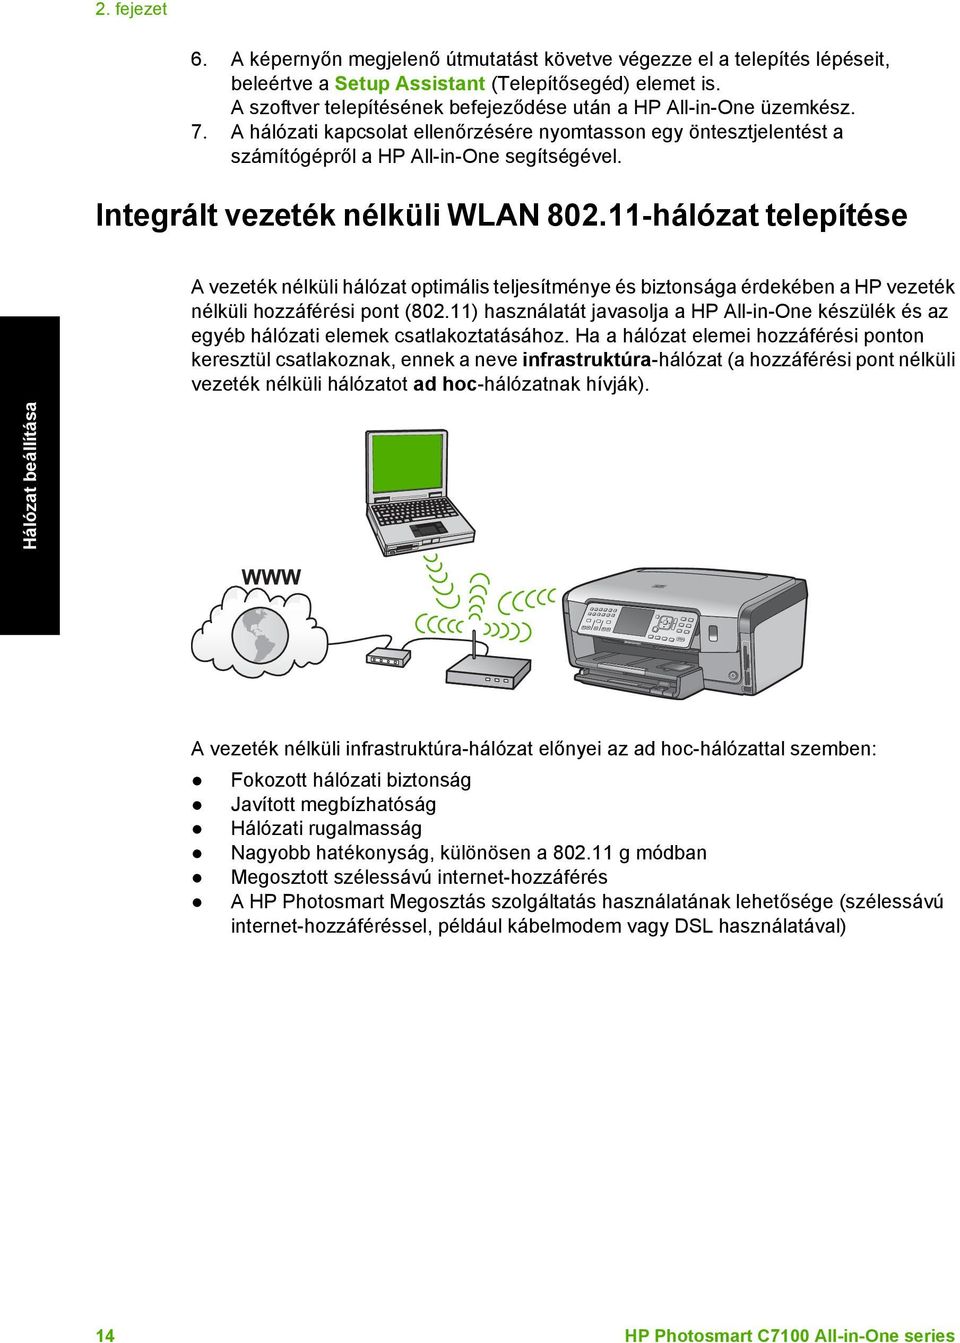 Integrált vezeték nélküli WLAN 802.11-hálózat telepítése A vezeték nélküli hálózat optimális teljesítménye és biztonsága érdekében a HP vezeték nélküli hozzáférési pont (802.